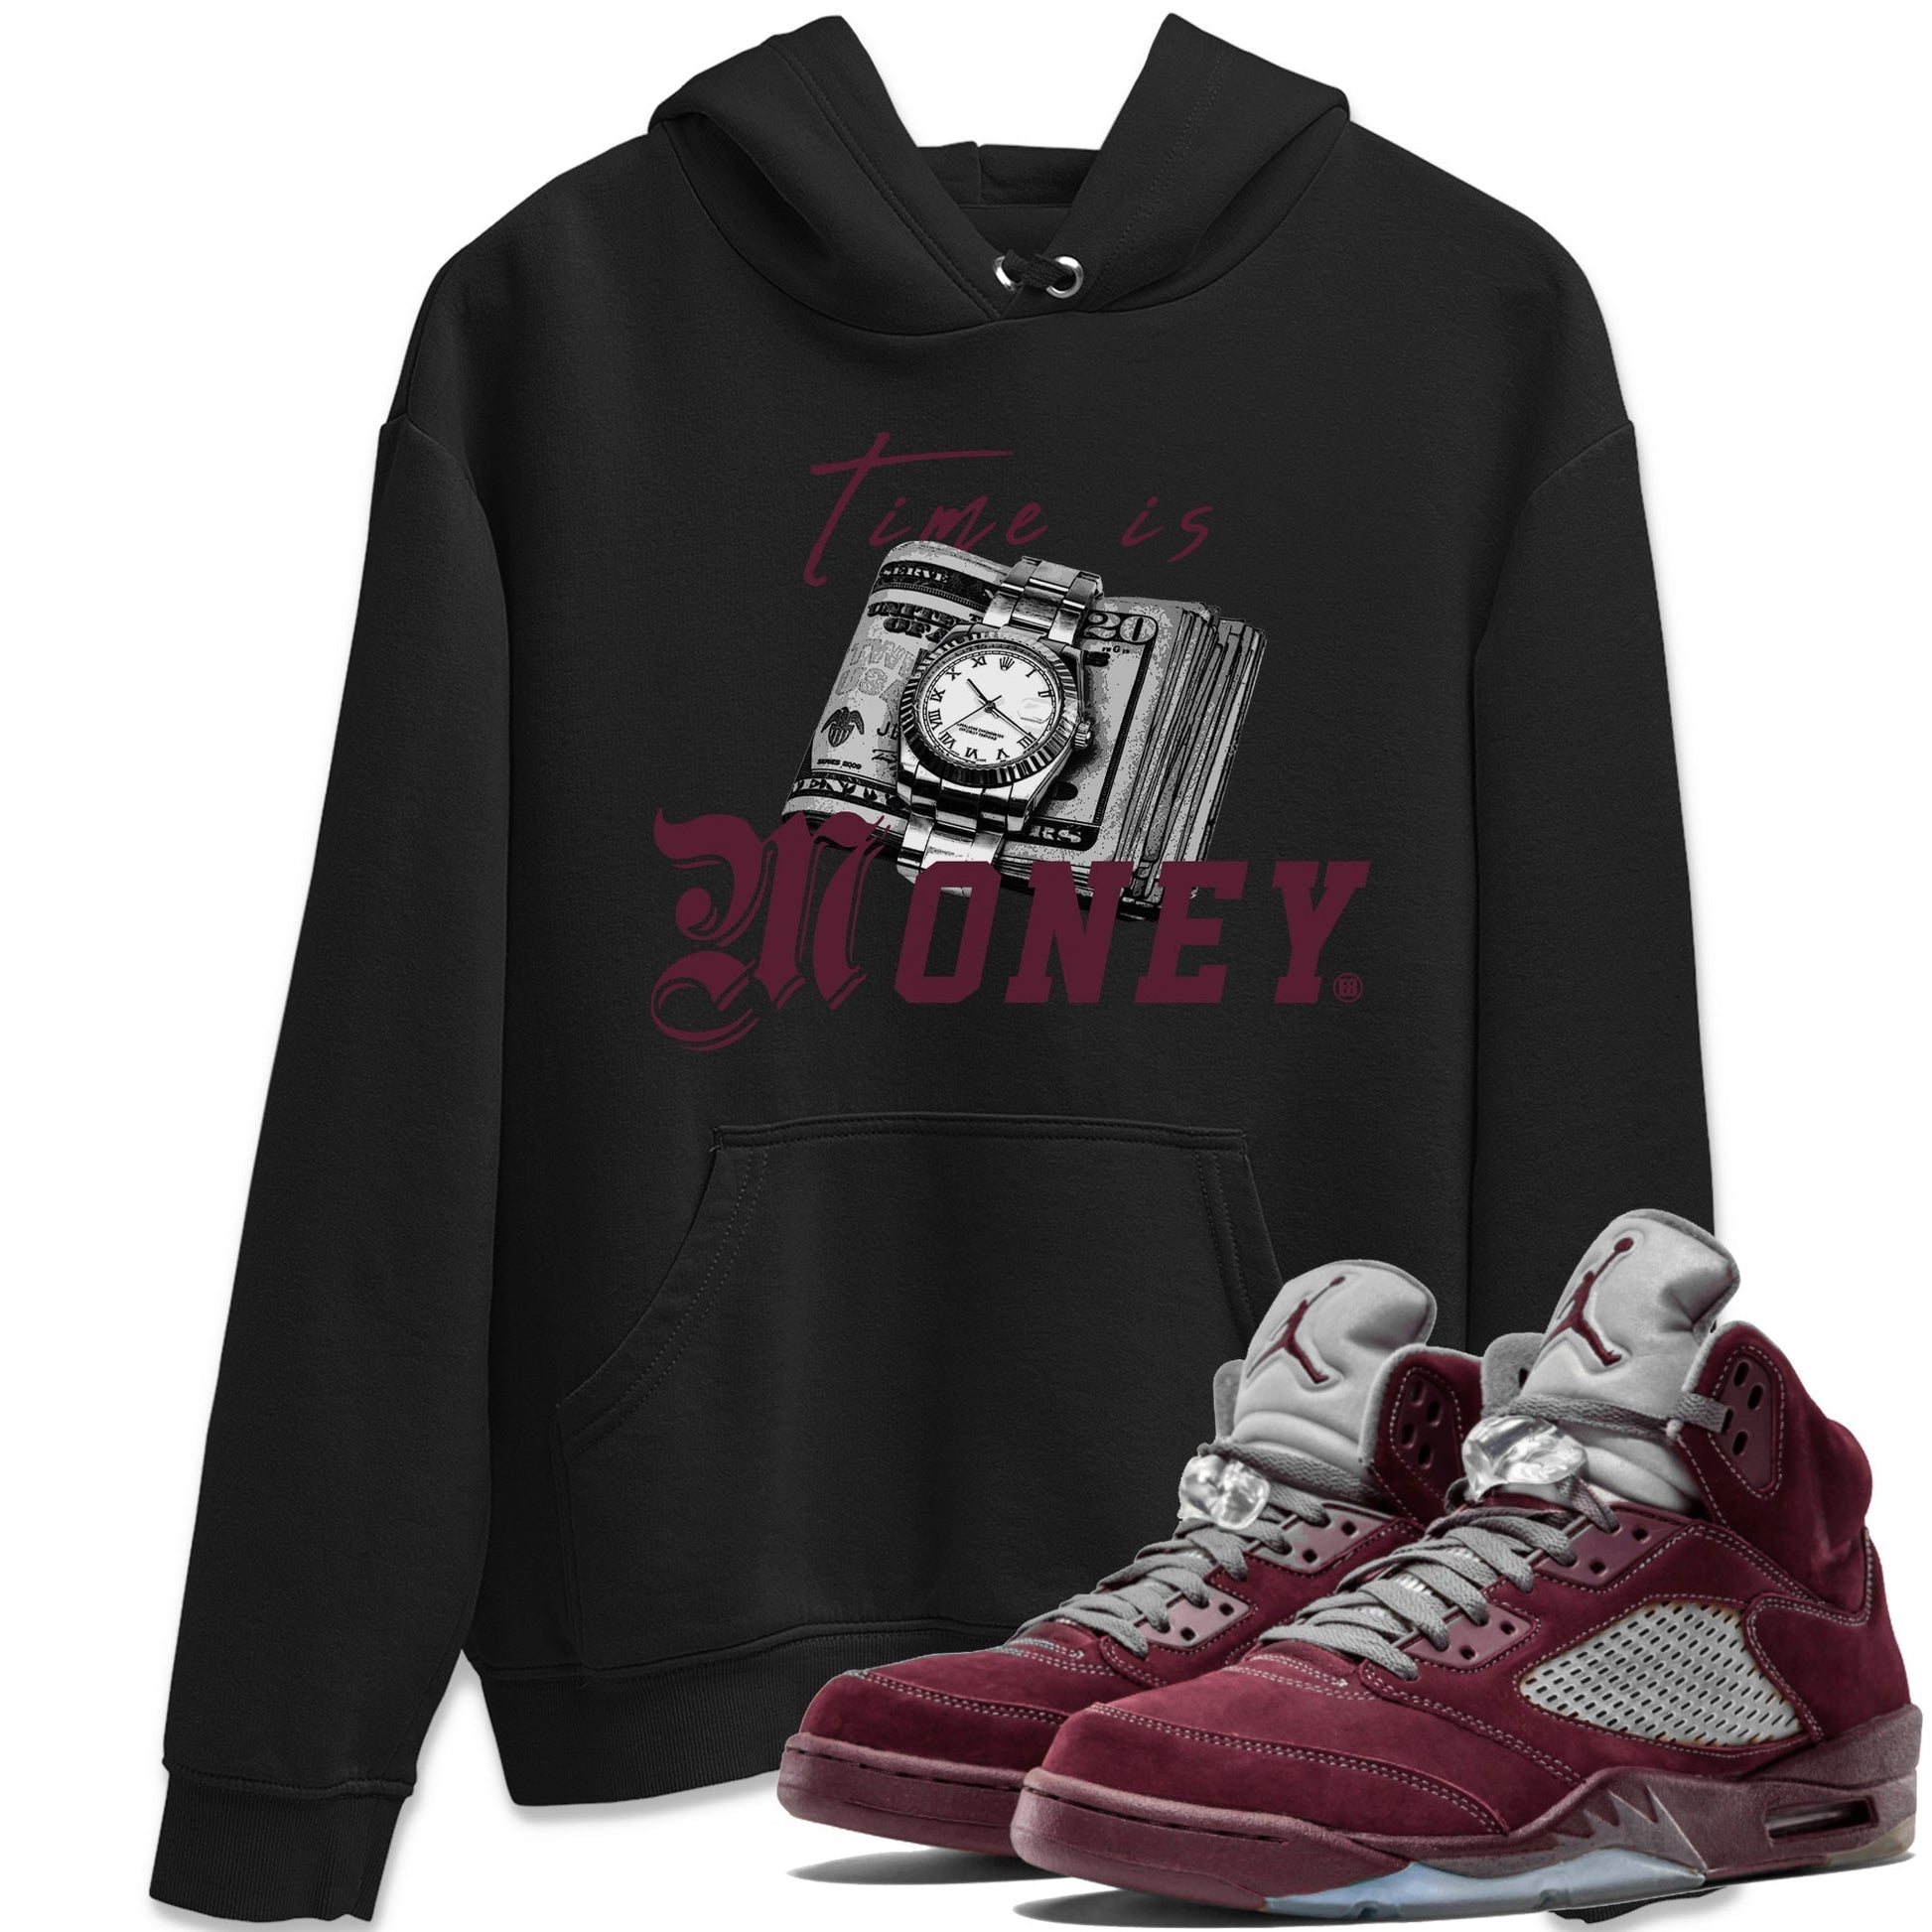 Air Jordan 5 Burgundy Sneaker Match Tees Time Is Money Sneaker T-Shirt AJ5 Burgundy Sneaker Release Tees Unisex Shirts Black 1